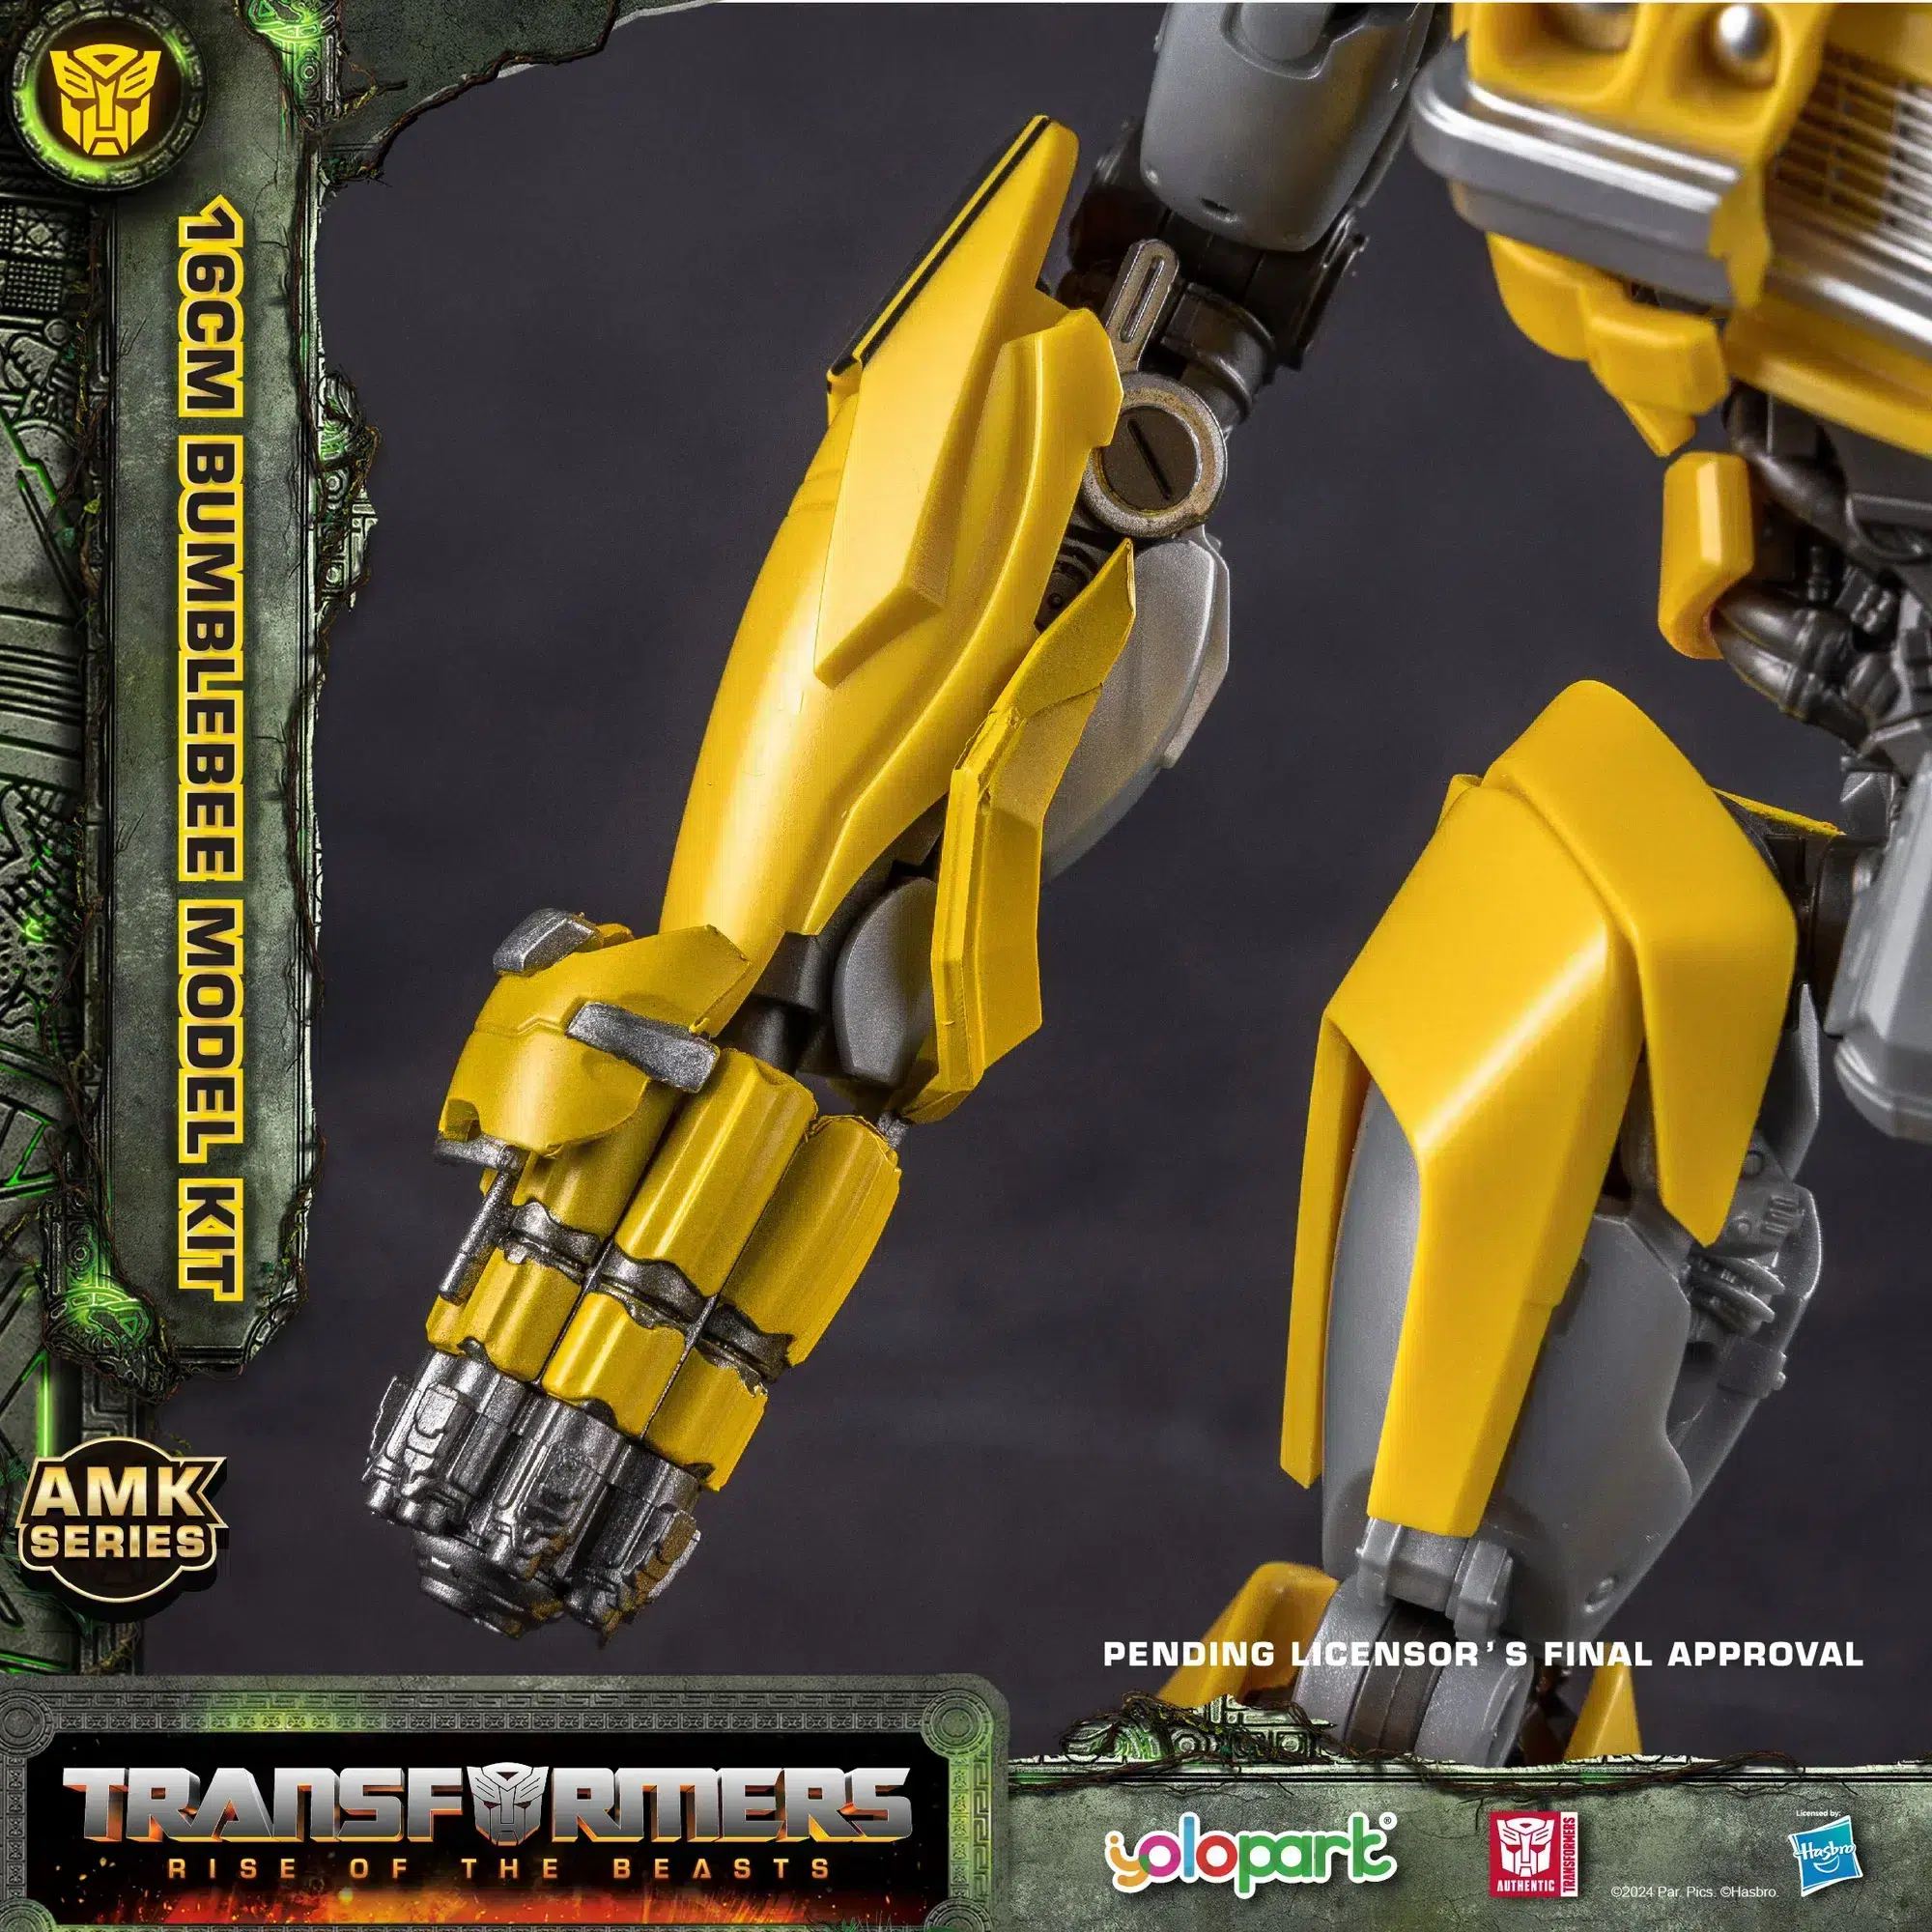 Yolopark Amk Serie Transformers Opkomst van de beesten Cheetor Modelbouwpakket 6